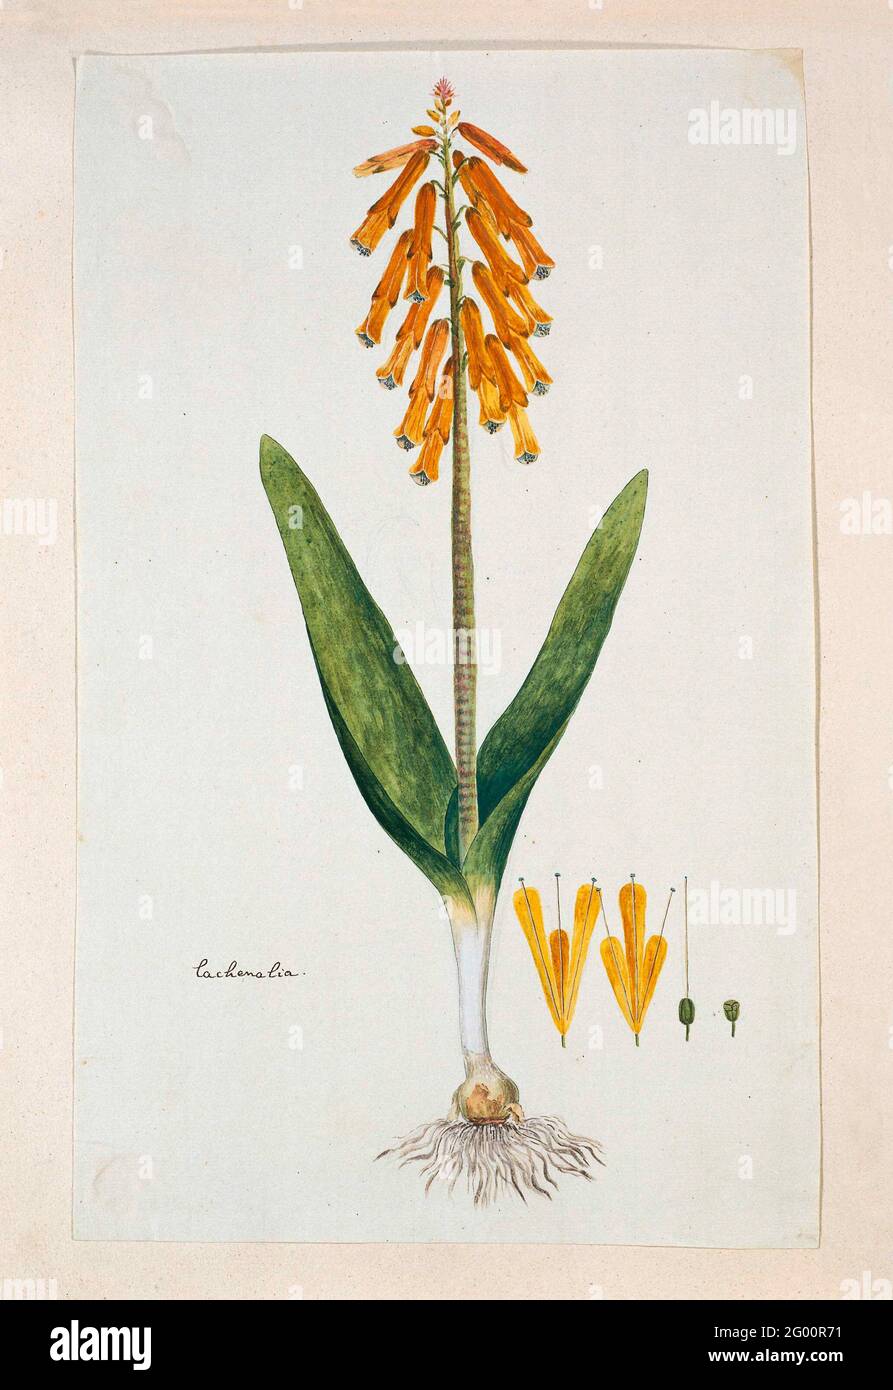 Lachenalia Aloides (L.F.) ENGL. was. aurea (opal flower). Lachenalia Aloides (L.F.) ENGL. was. aurea. Stock Photo